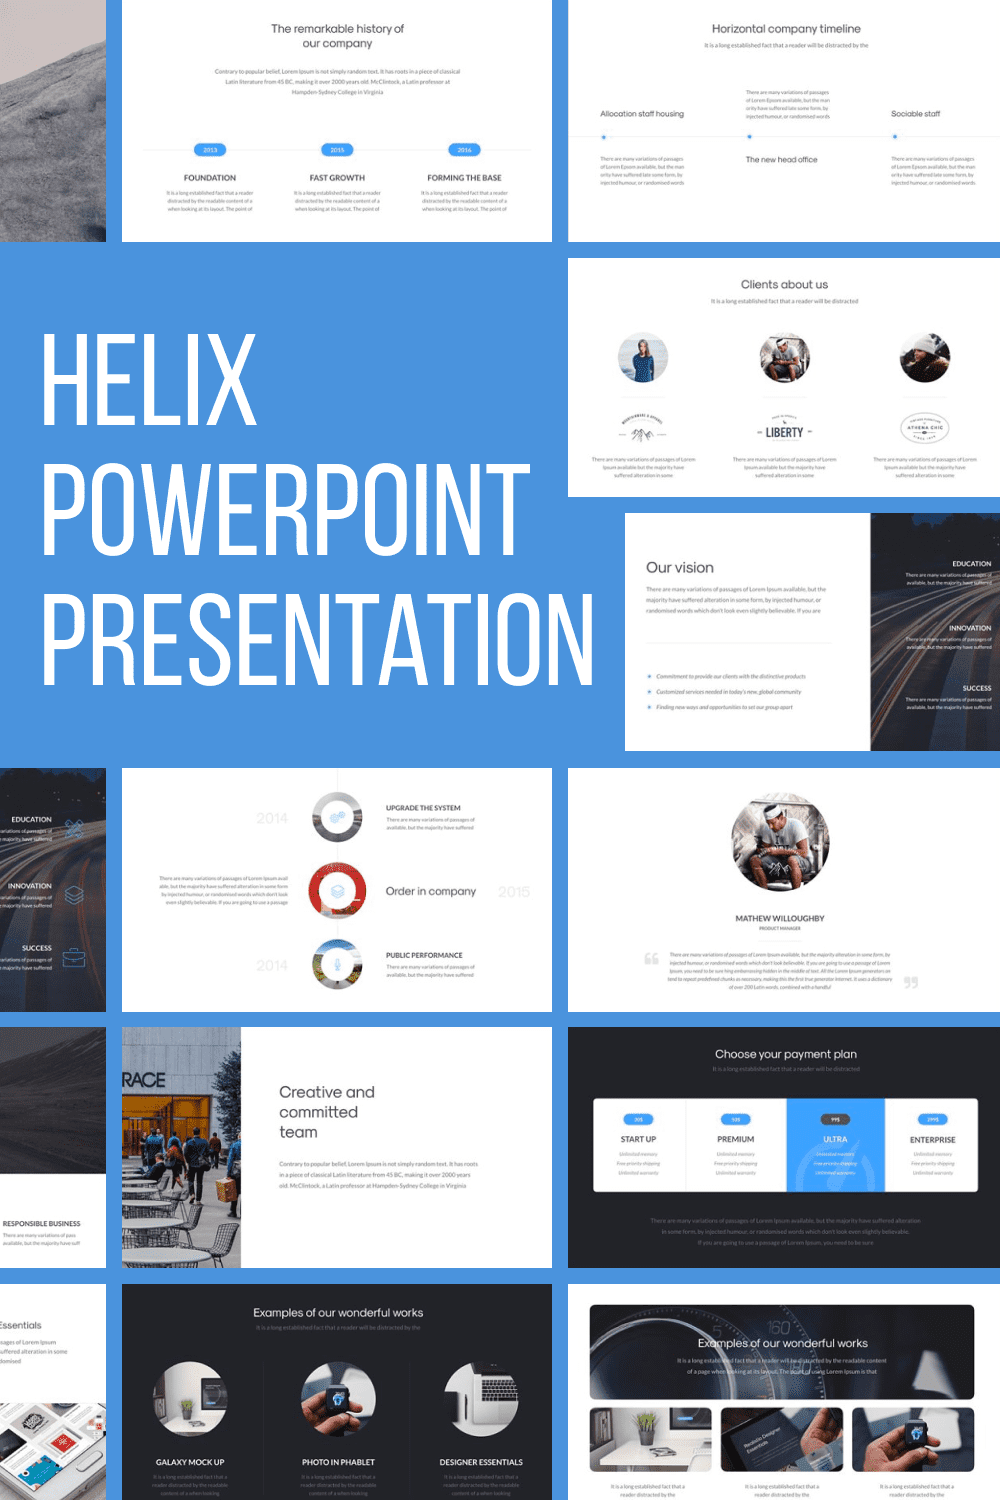 Helix PowerPoint Presentation - Pinterest.